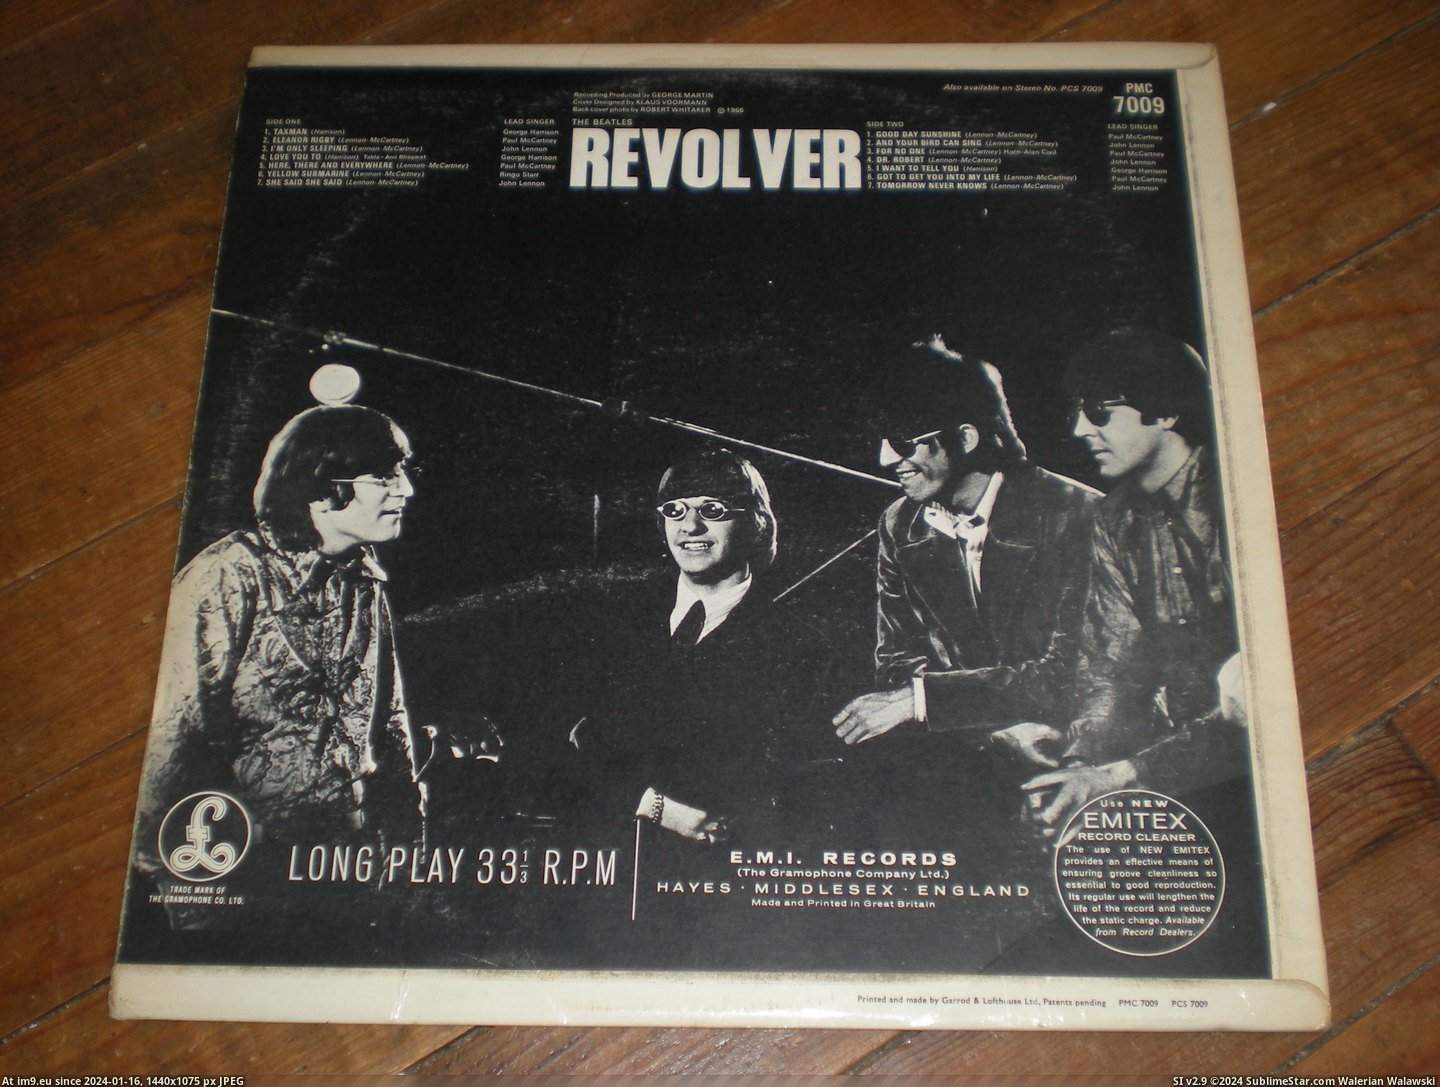  #Revolver  Revolver 15-07-14 3 Pic. (Bild von album new 1))